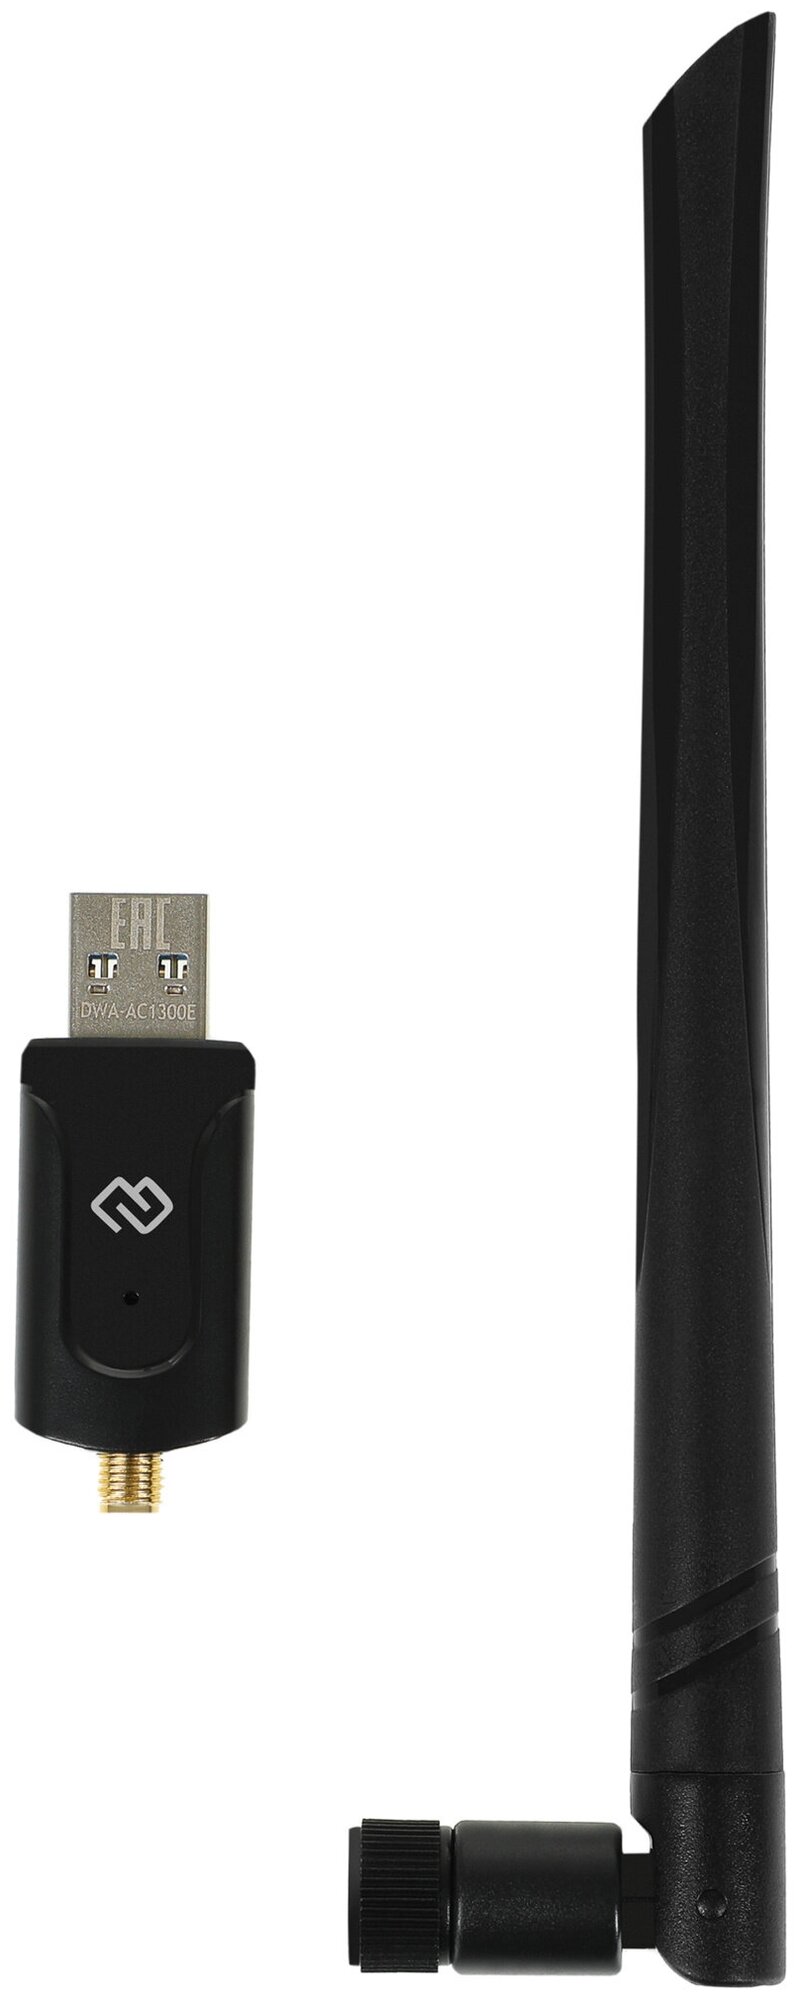 Сетевой адаптер Wi-Fi Digma DWA-AC1300E AC1300 USB 3.0 ант.внеш.съем 1ант. упак.1шт